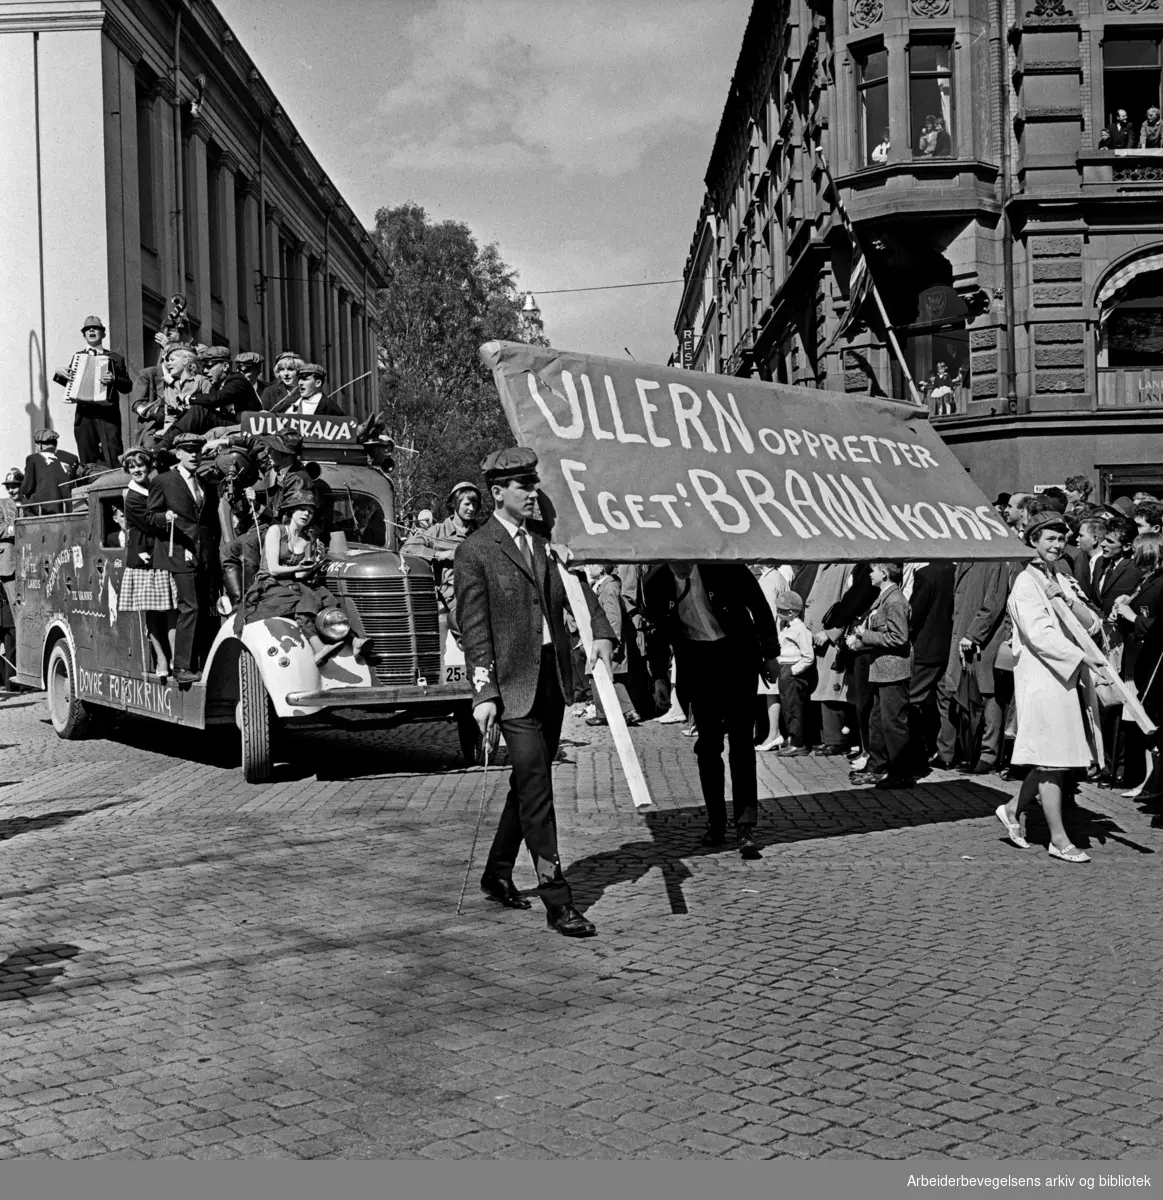 Russetoget. Eget brannkorps på Ullern. 17. mai 1962.